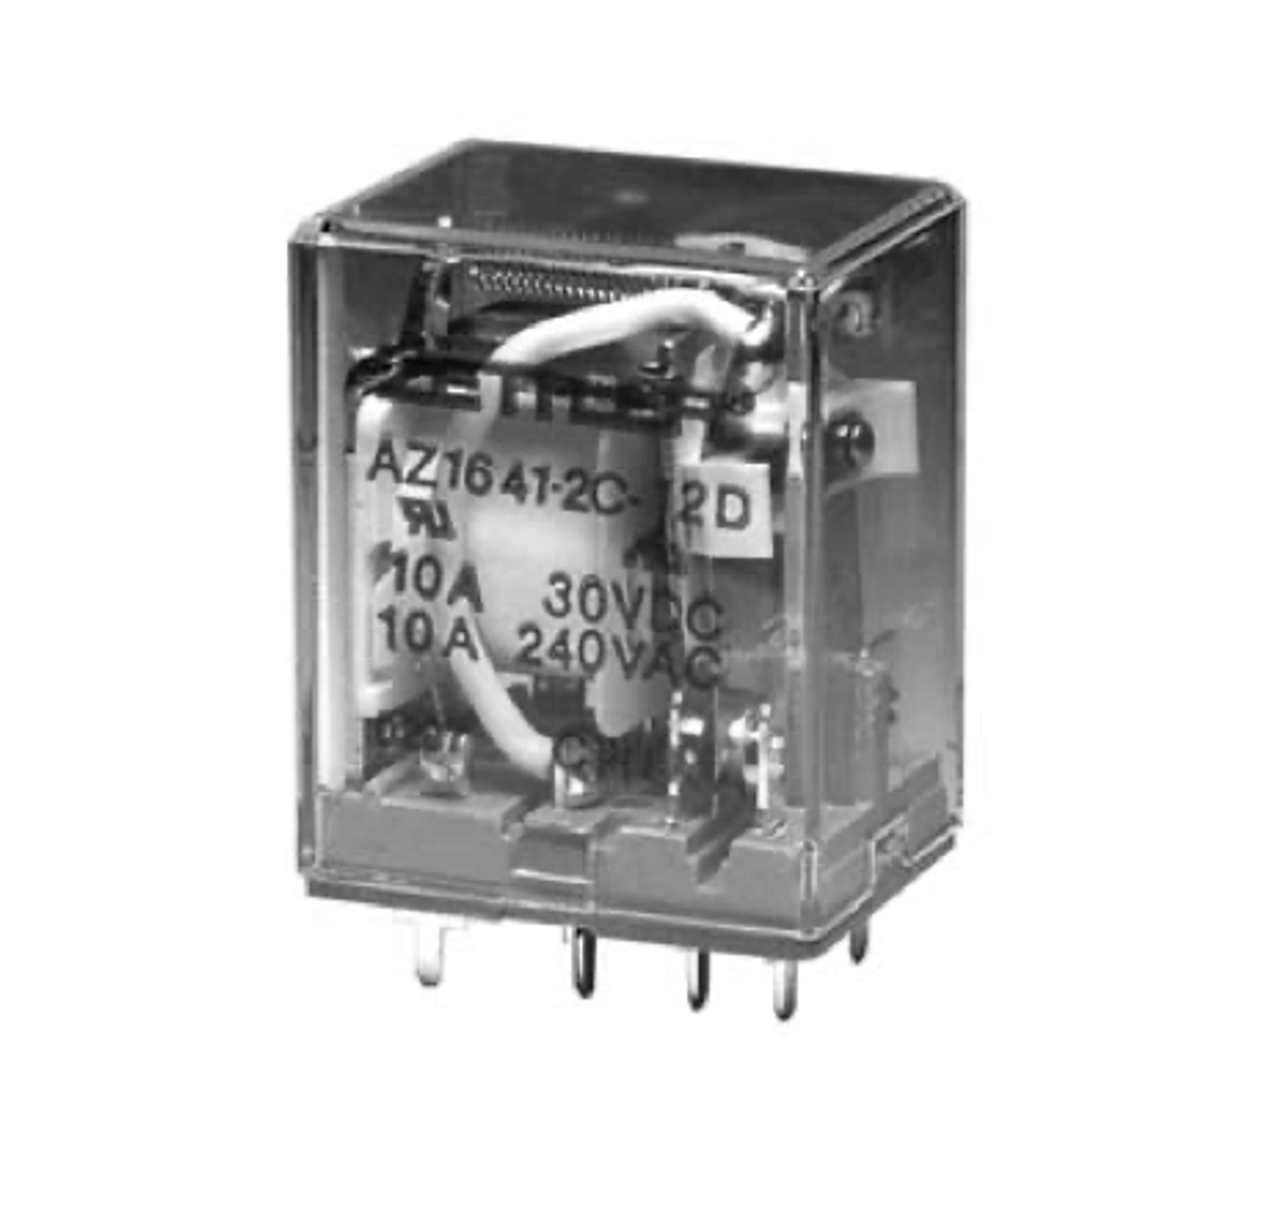 American Zettler AZ1641-2C-120A Power Relay